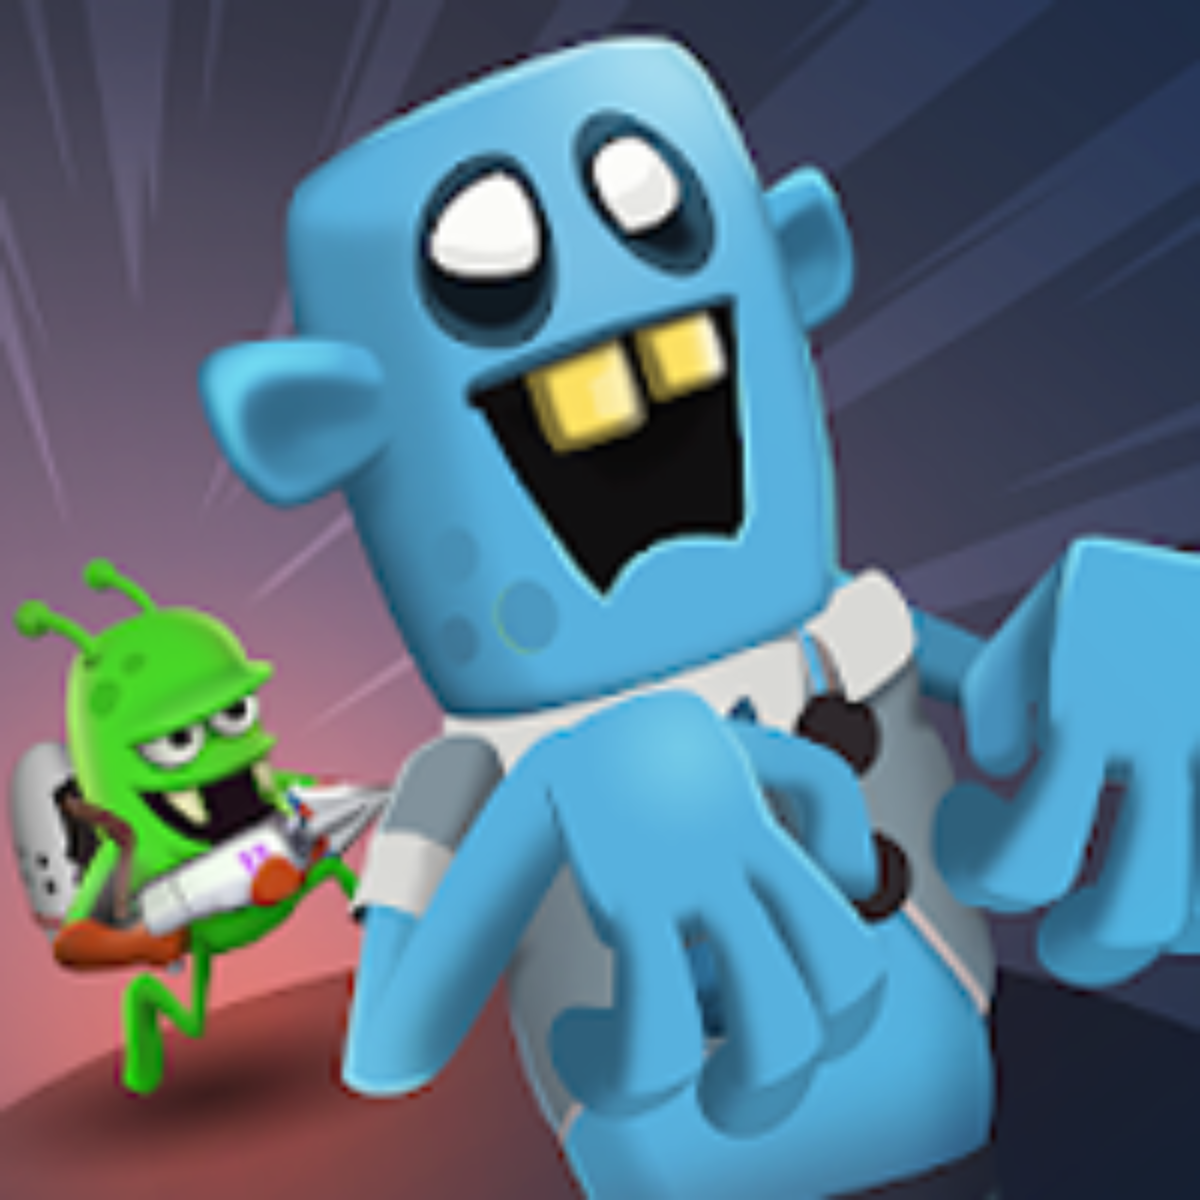 Zombie Catchers v1.32.8 Apk Mod (Dinheiro Infinito) Download 2023